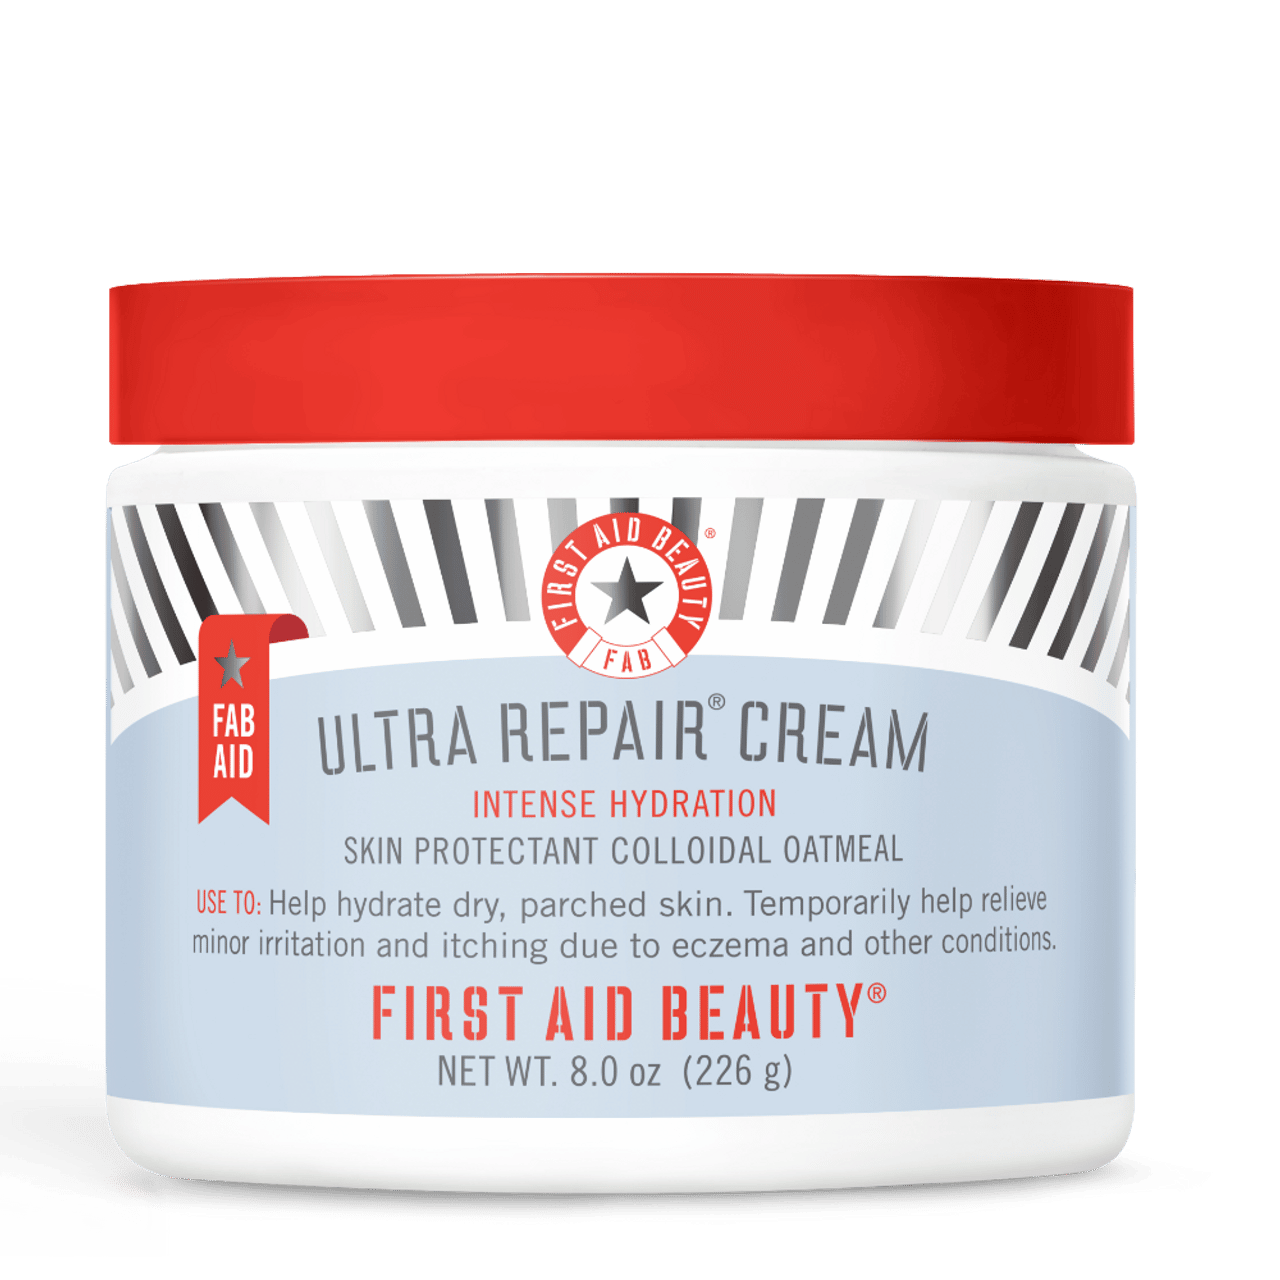 FAB AID Ultra Repair Cream